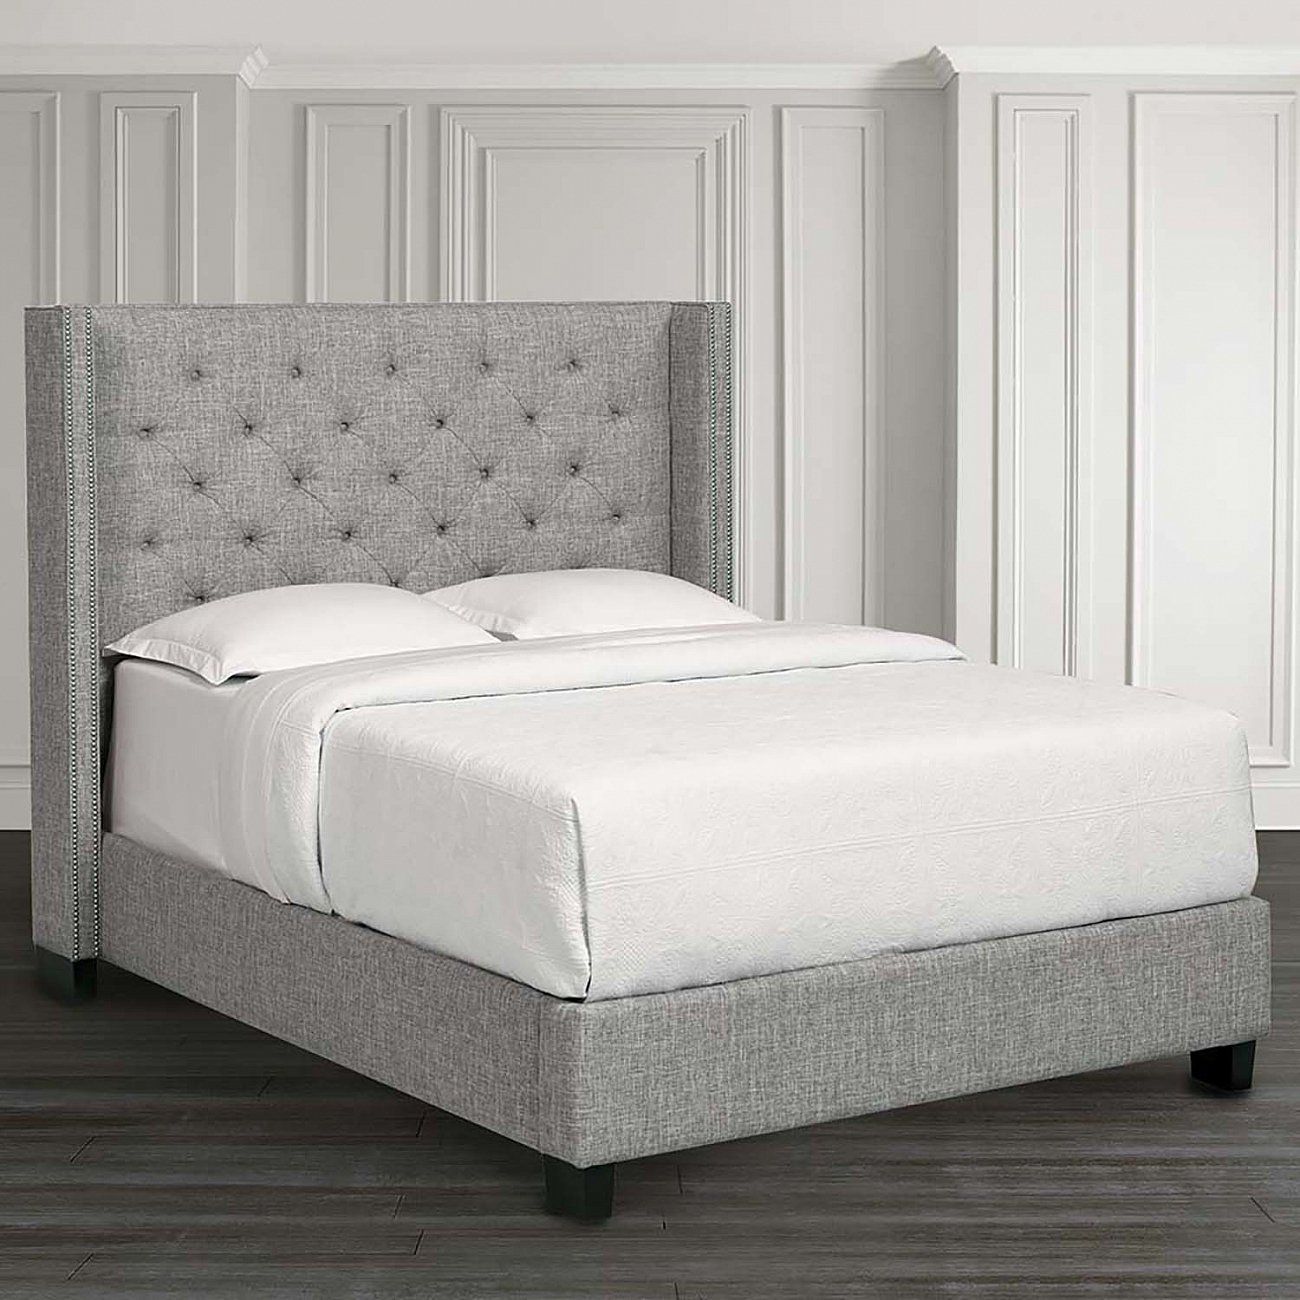 Кровать двуспальная 180х200 см молочная из велюра с гвоздиками и каретной стяжкой Wing